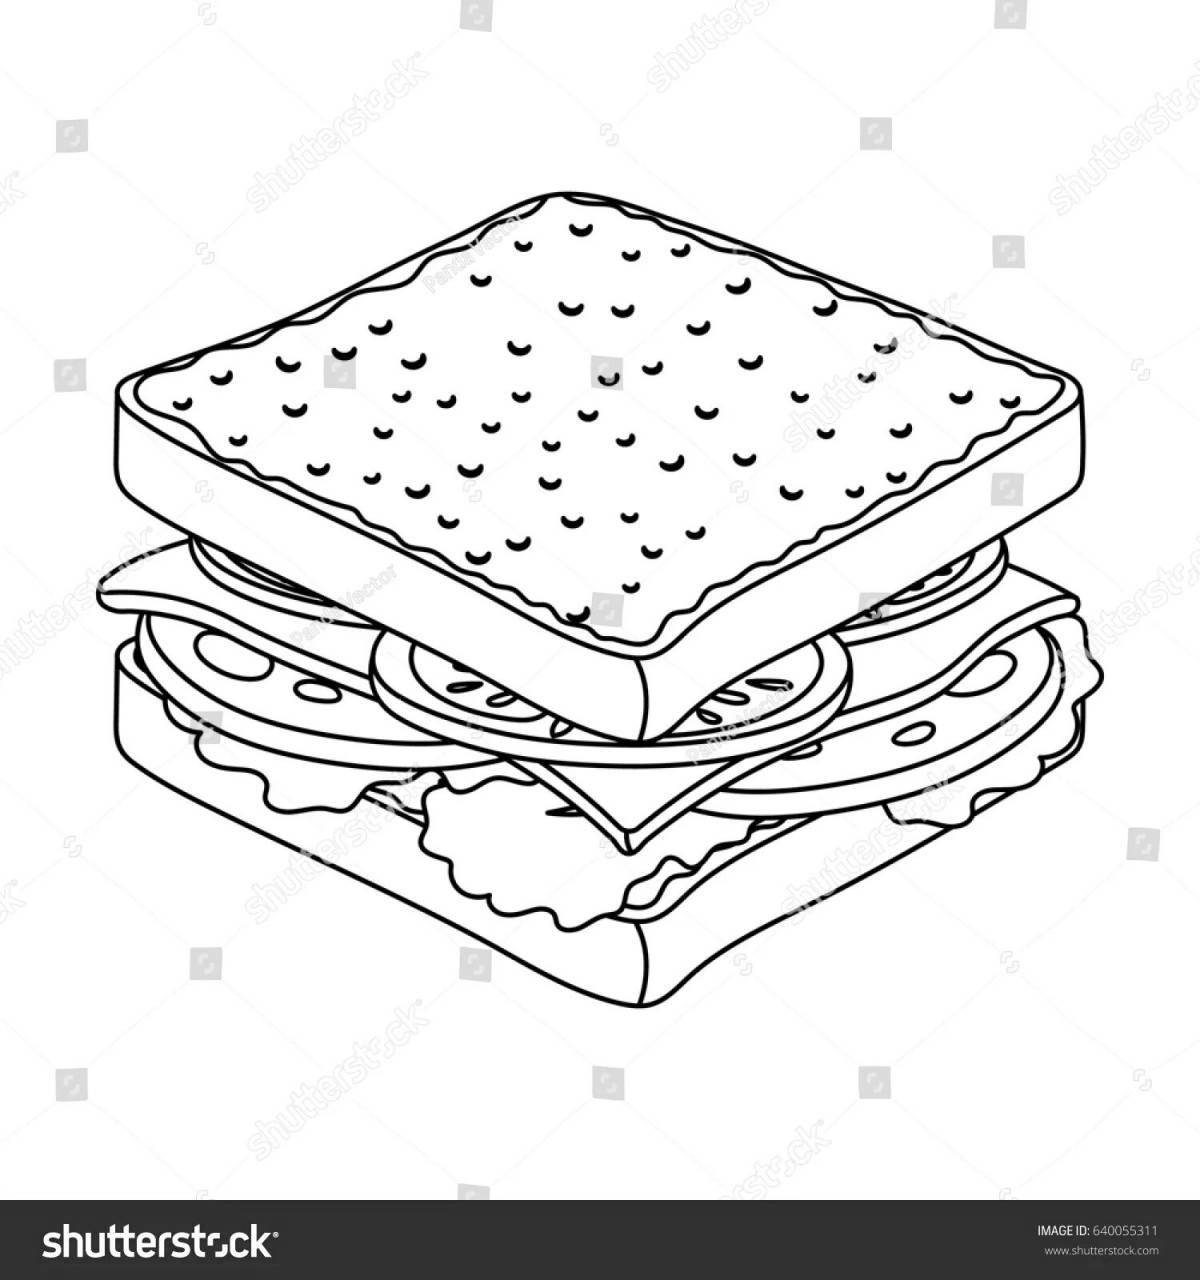 Child sandwich #16